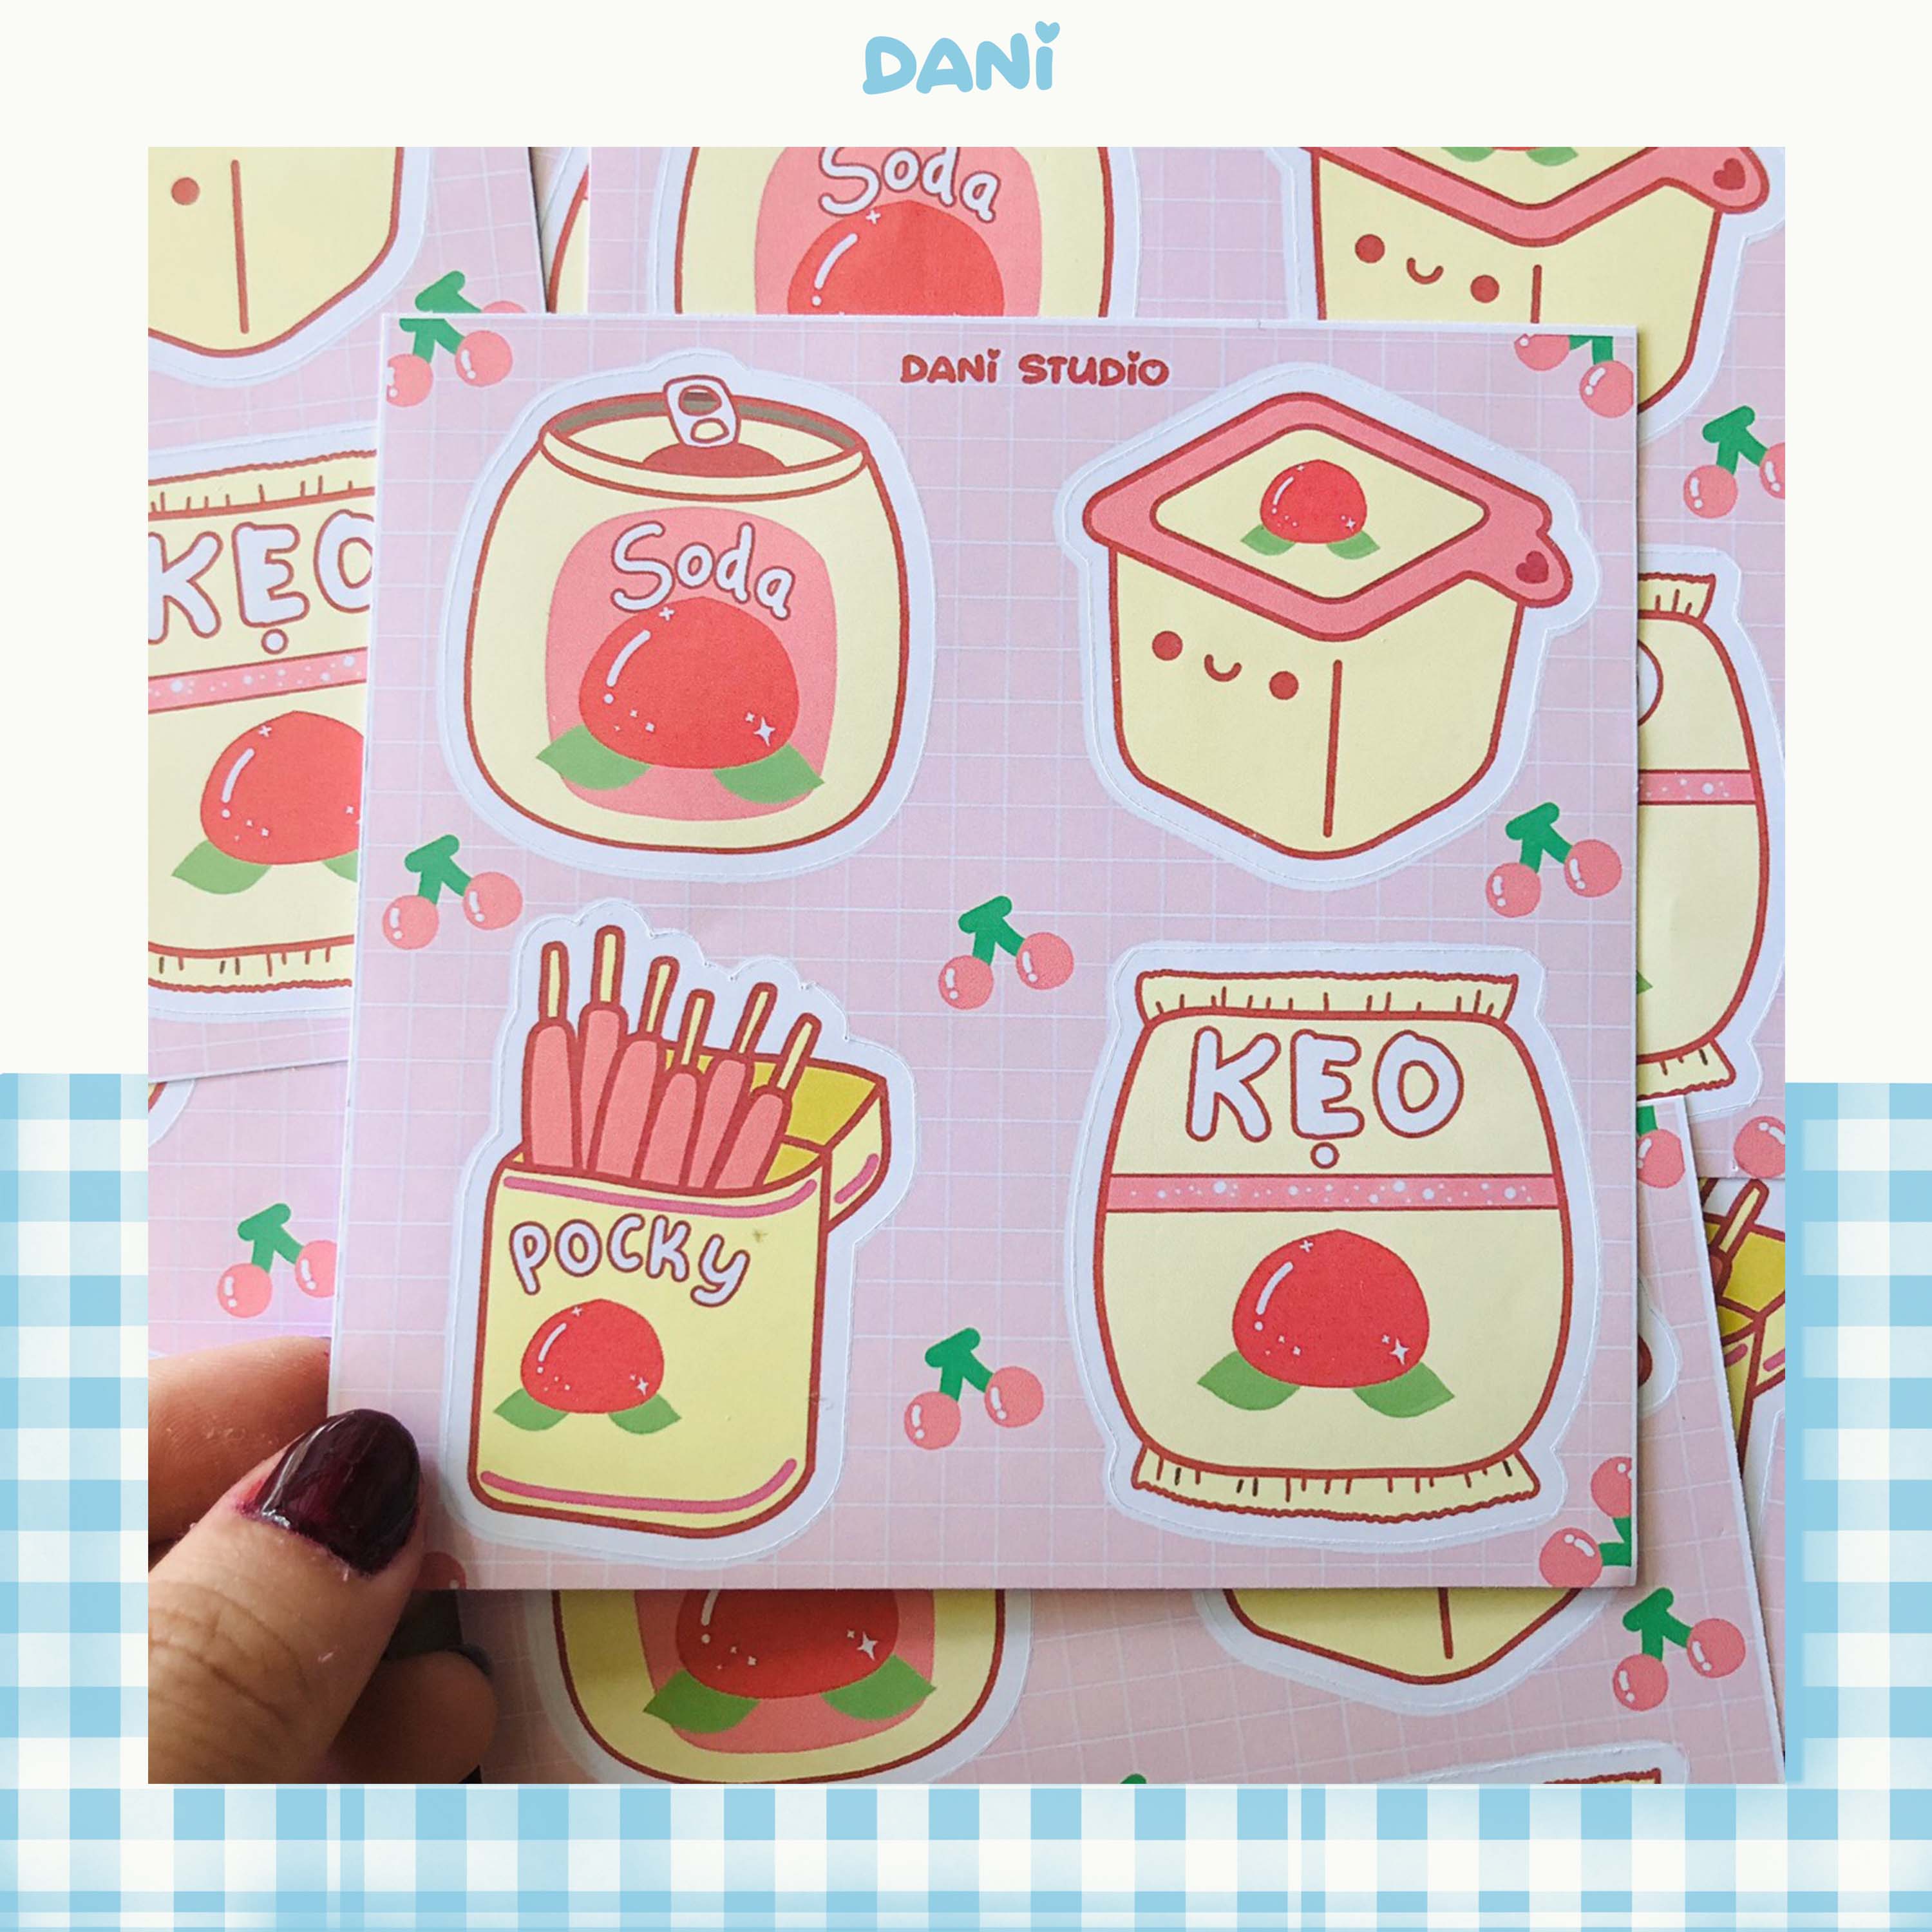 Sticker đồ ăn vị đào dễ thương: Những sticker với hương vị đào dễ thương sẽ khiến bạn cảm thấy ngọt ngào và xúc động. Hãy xem hình ảnh và chiêm ngưỡng những thiết kế tuyệt đẹp này.